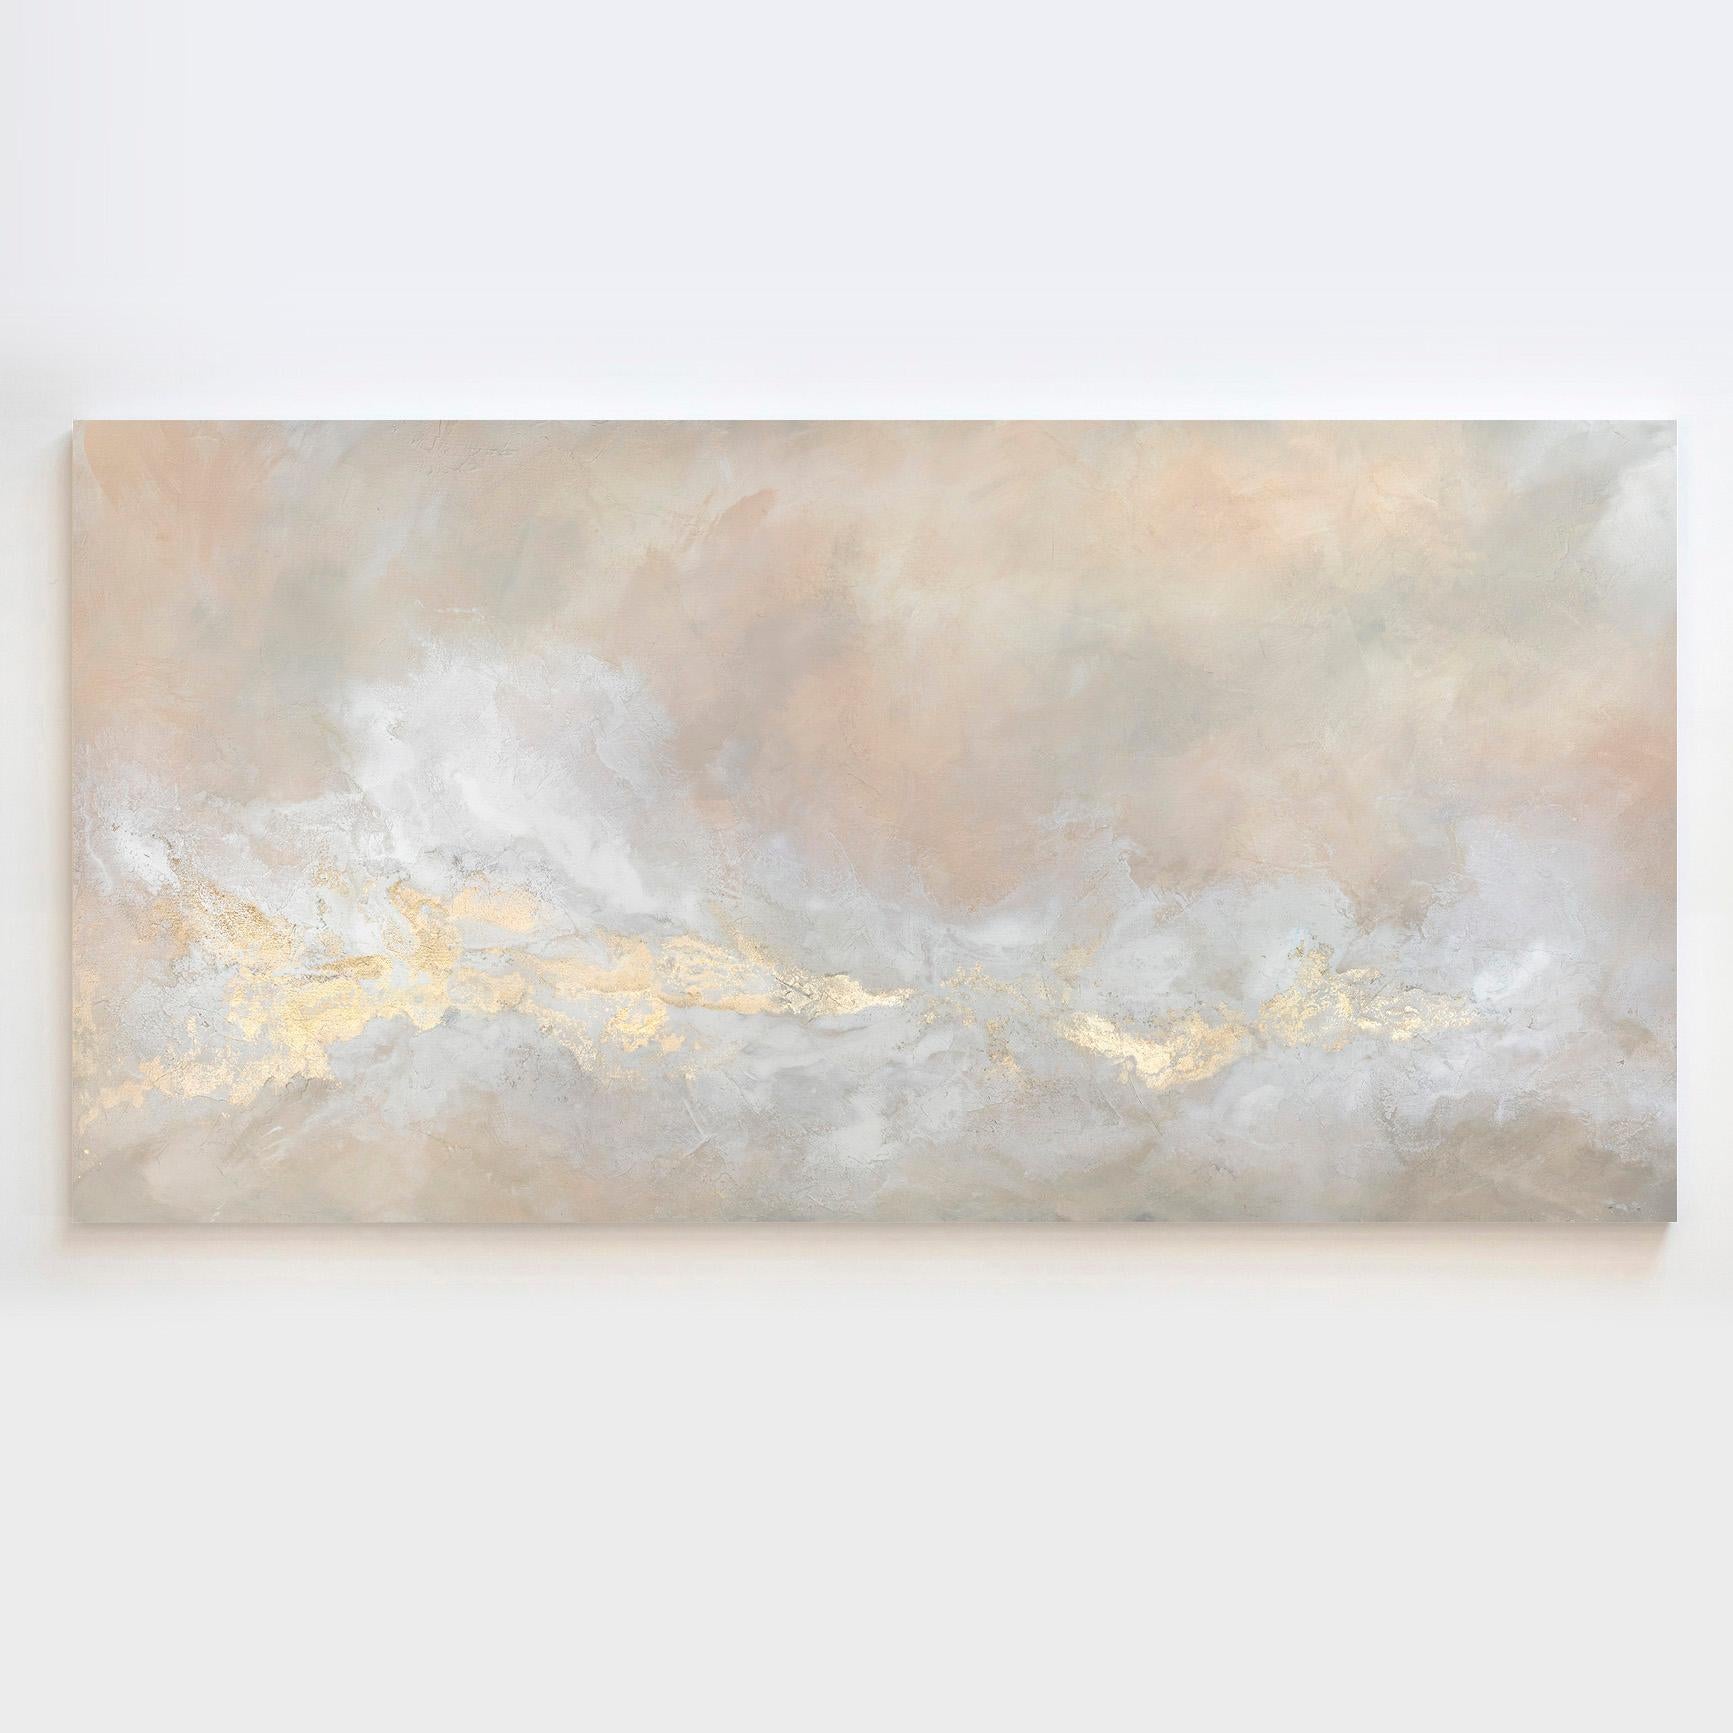 Dieses große abstrakte Gemälde von Julia Contacessi ist mit gemischten Medien auf Leinwand gemalt. Es zeichnet sich durch eine leichte, ausgewogene Komposition und eine warme, neutrale Farbpalette mit errötenden Tönen, Weiß und metallischen